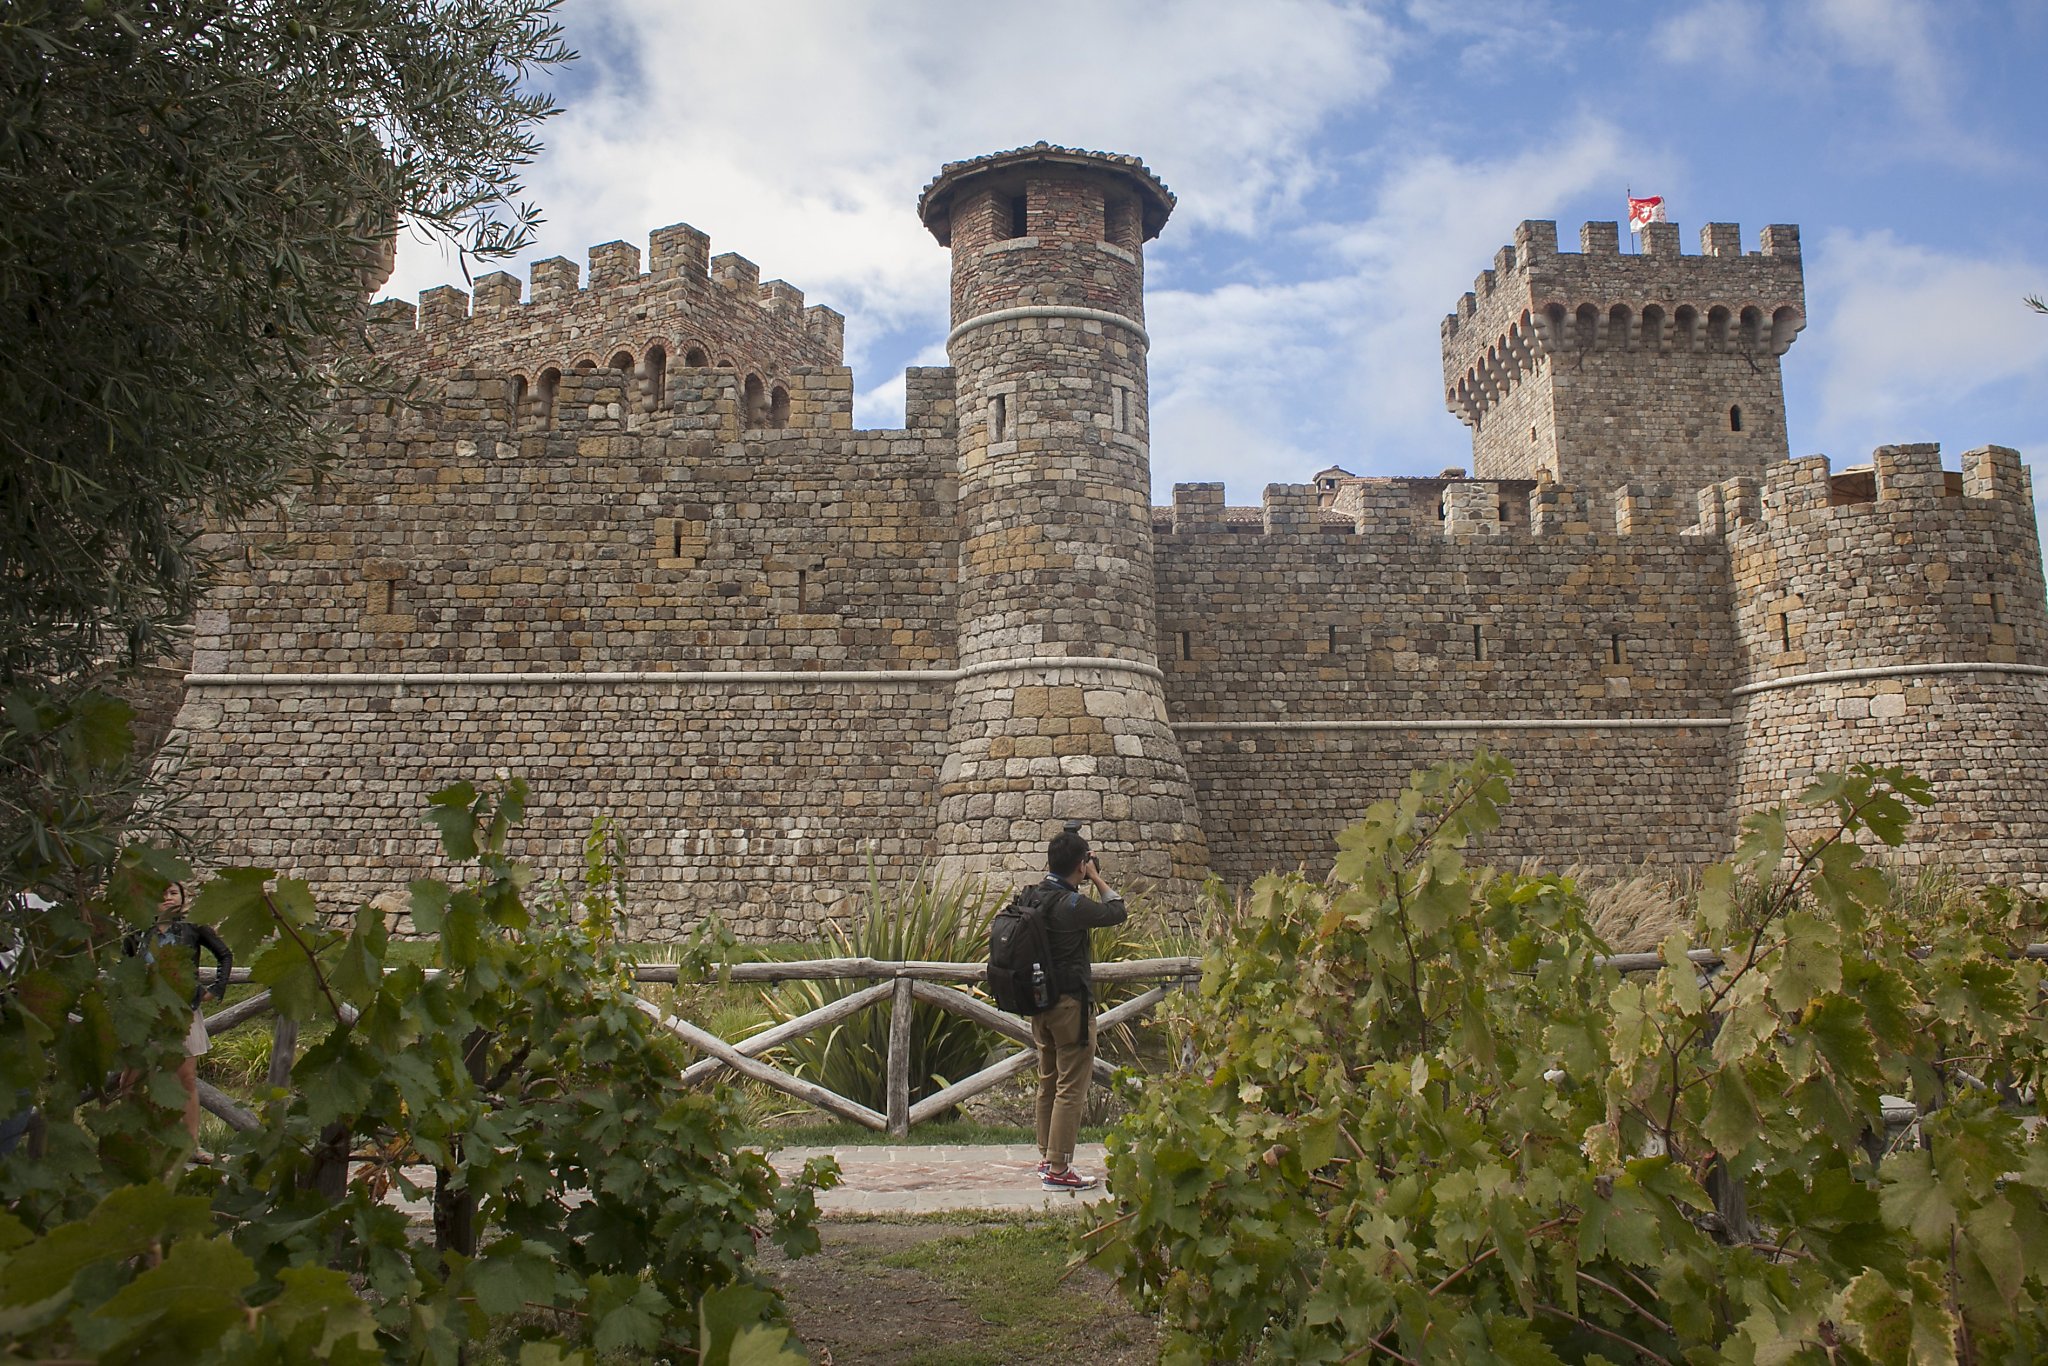 Castello di Amorosa wine train excursion fit for a king